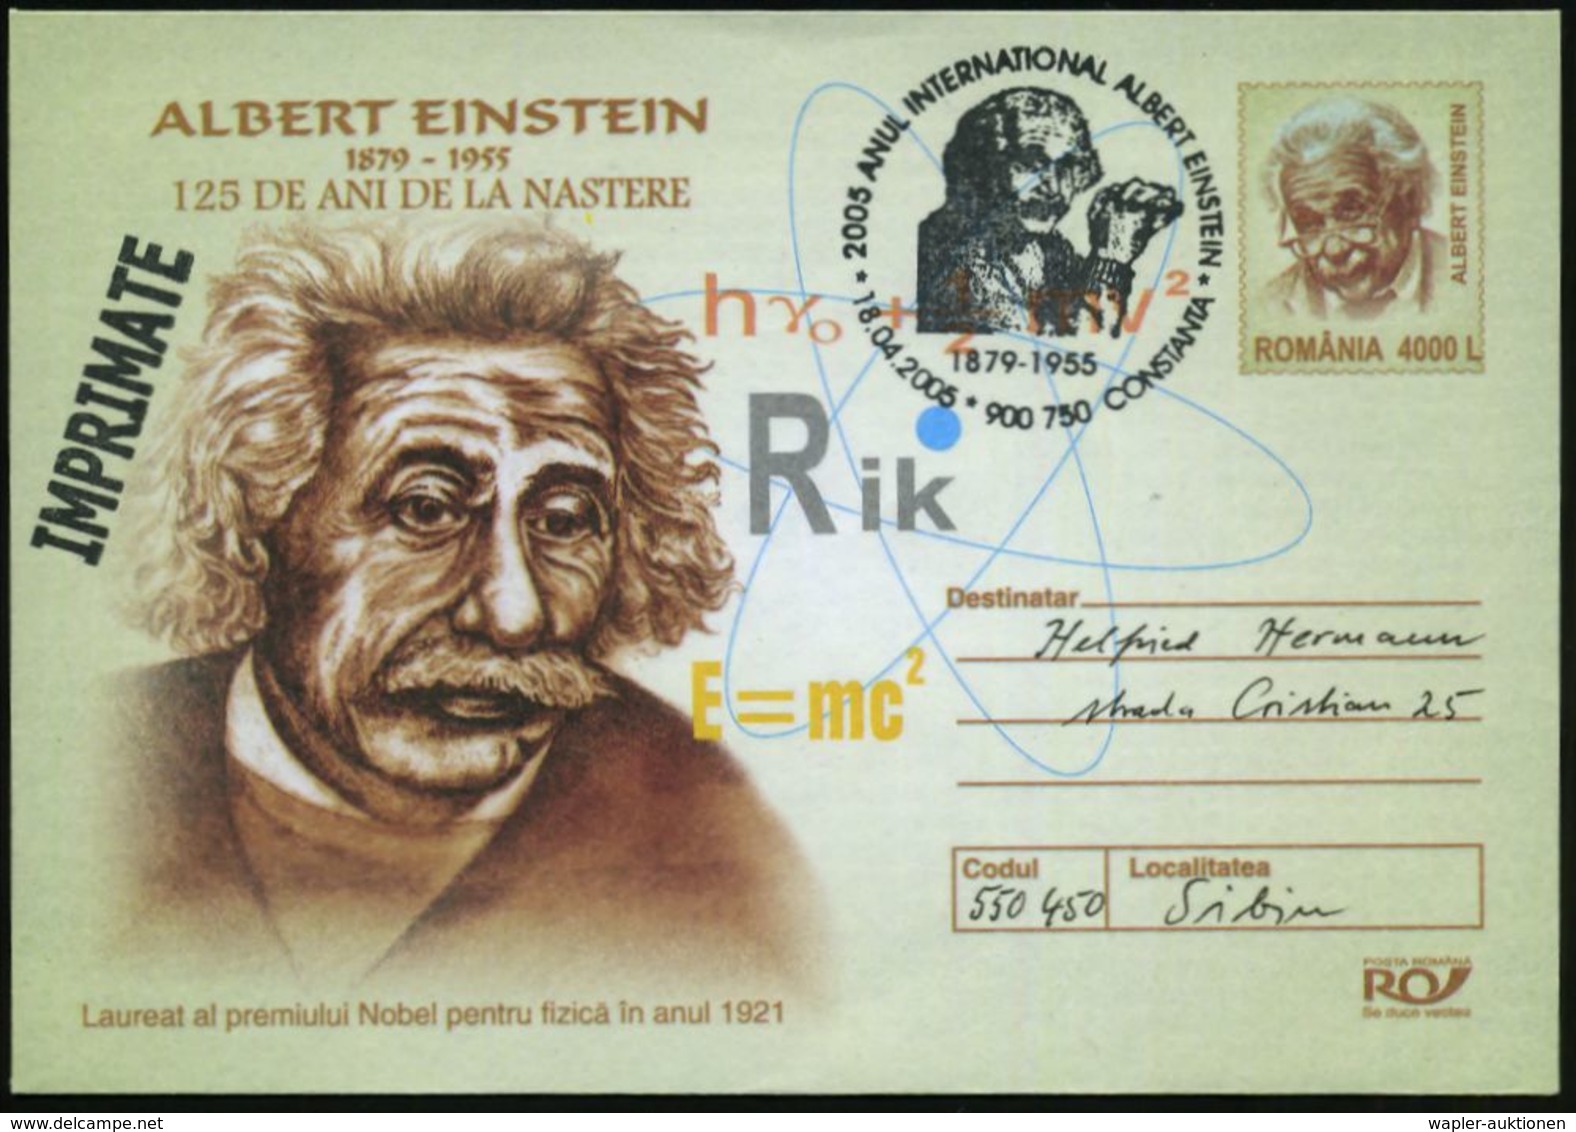 RUMÄNIEN 2005 (18.4.) SSt.: 900 750 CONSTANTA/..ANUL INTERNAT. ALBERT EINSTEIN (Brustbild Alter Einstein) Motivähnl. Son - Premio Nobel